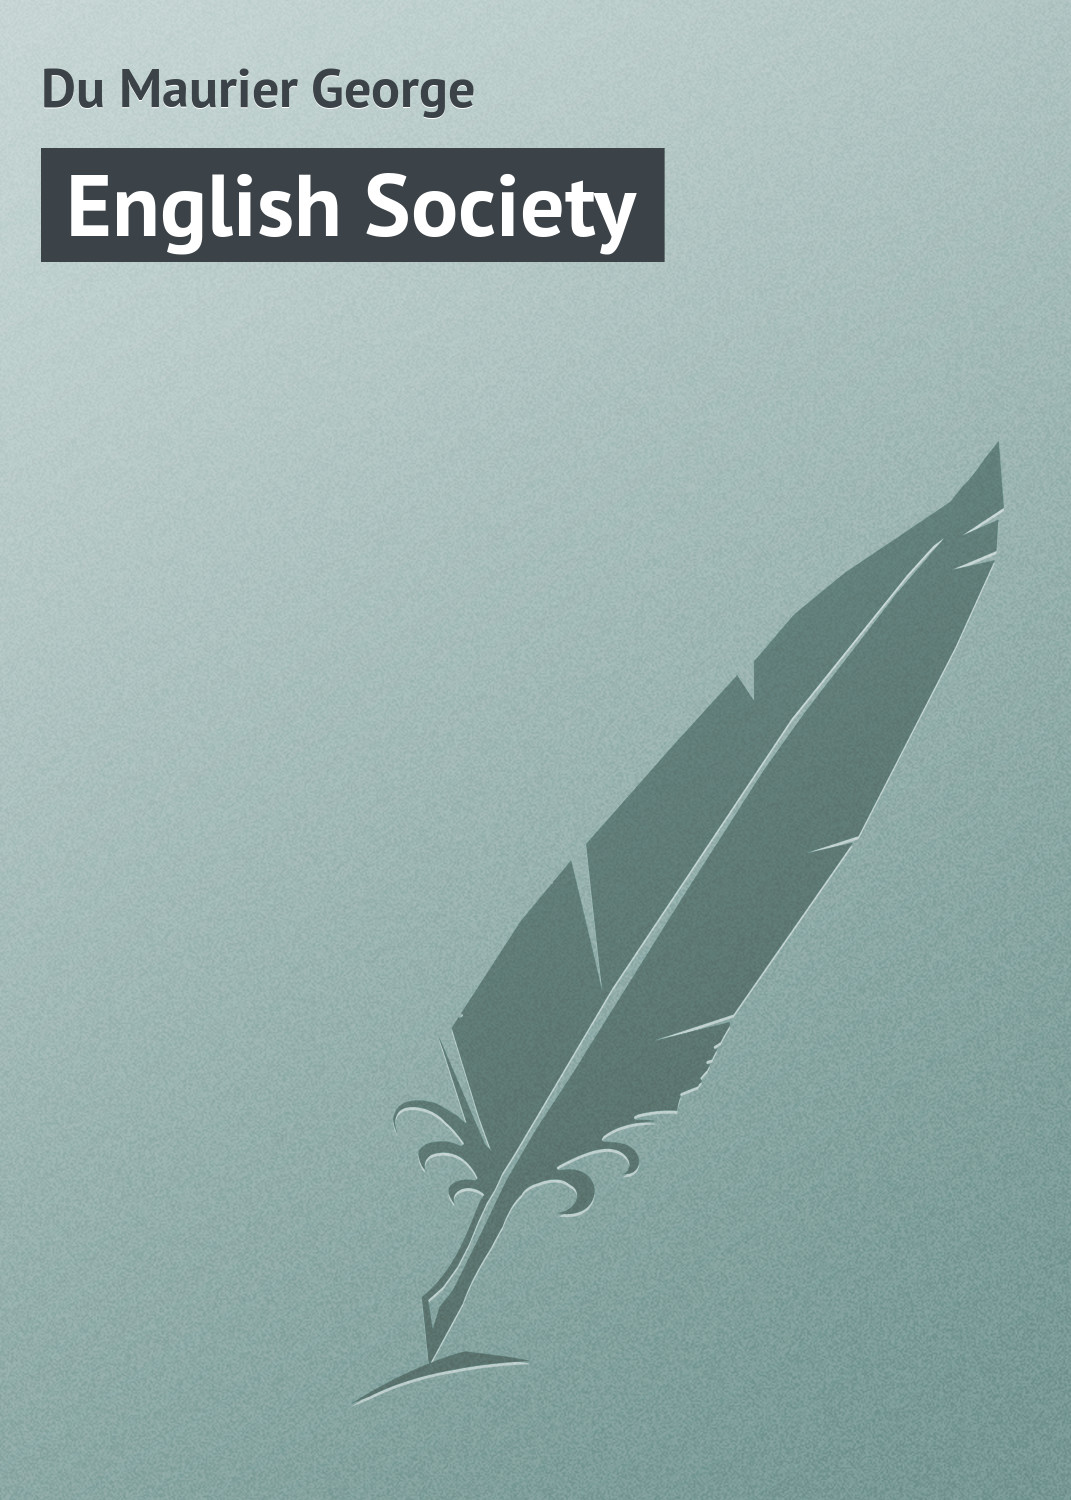 Книга English Society из серии , созданная George Du Maurier, может относится к жанру Зарубежная классика, Зарубежный юмор. Стоимость электронной книги English Society с идентификатором 23160195 составляет 5.99 руб.